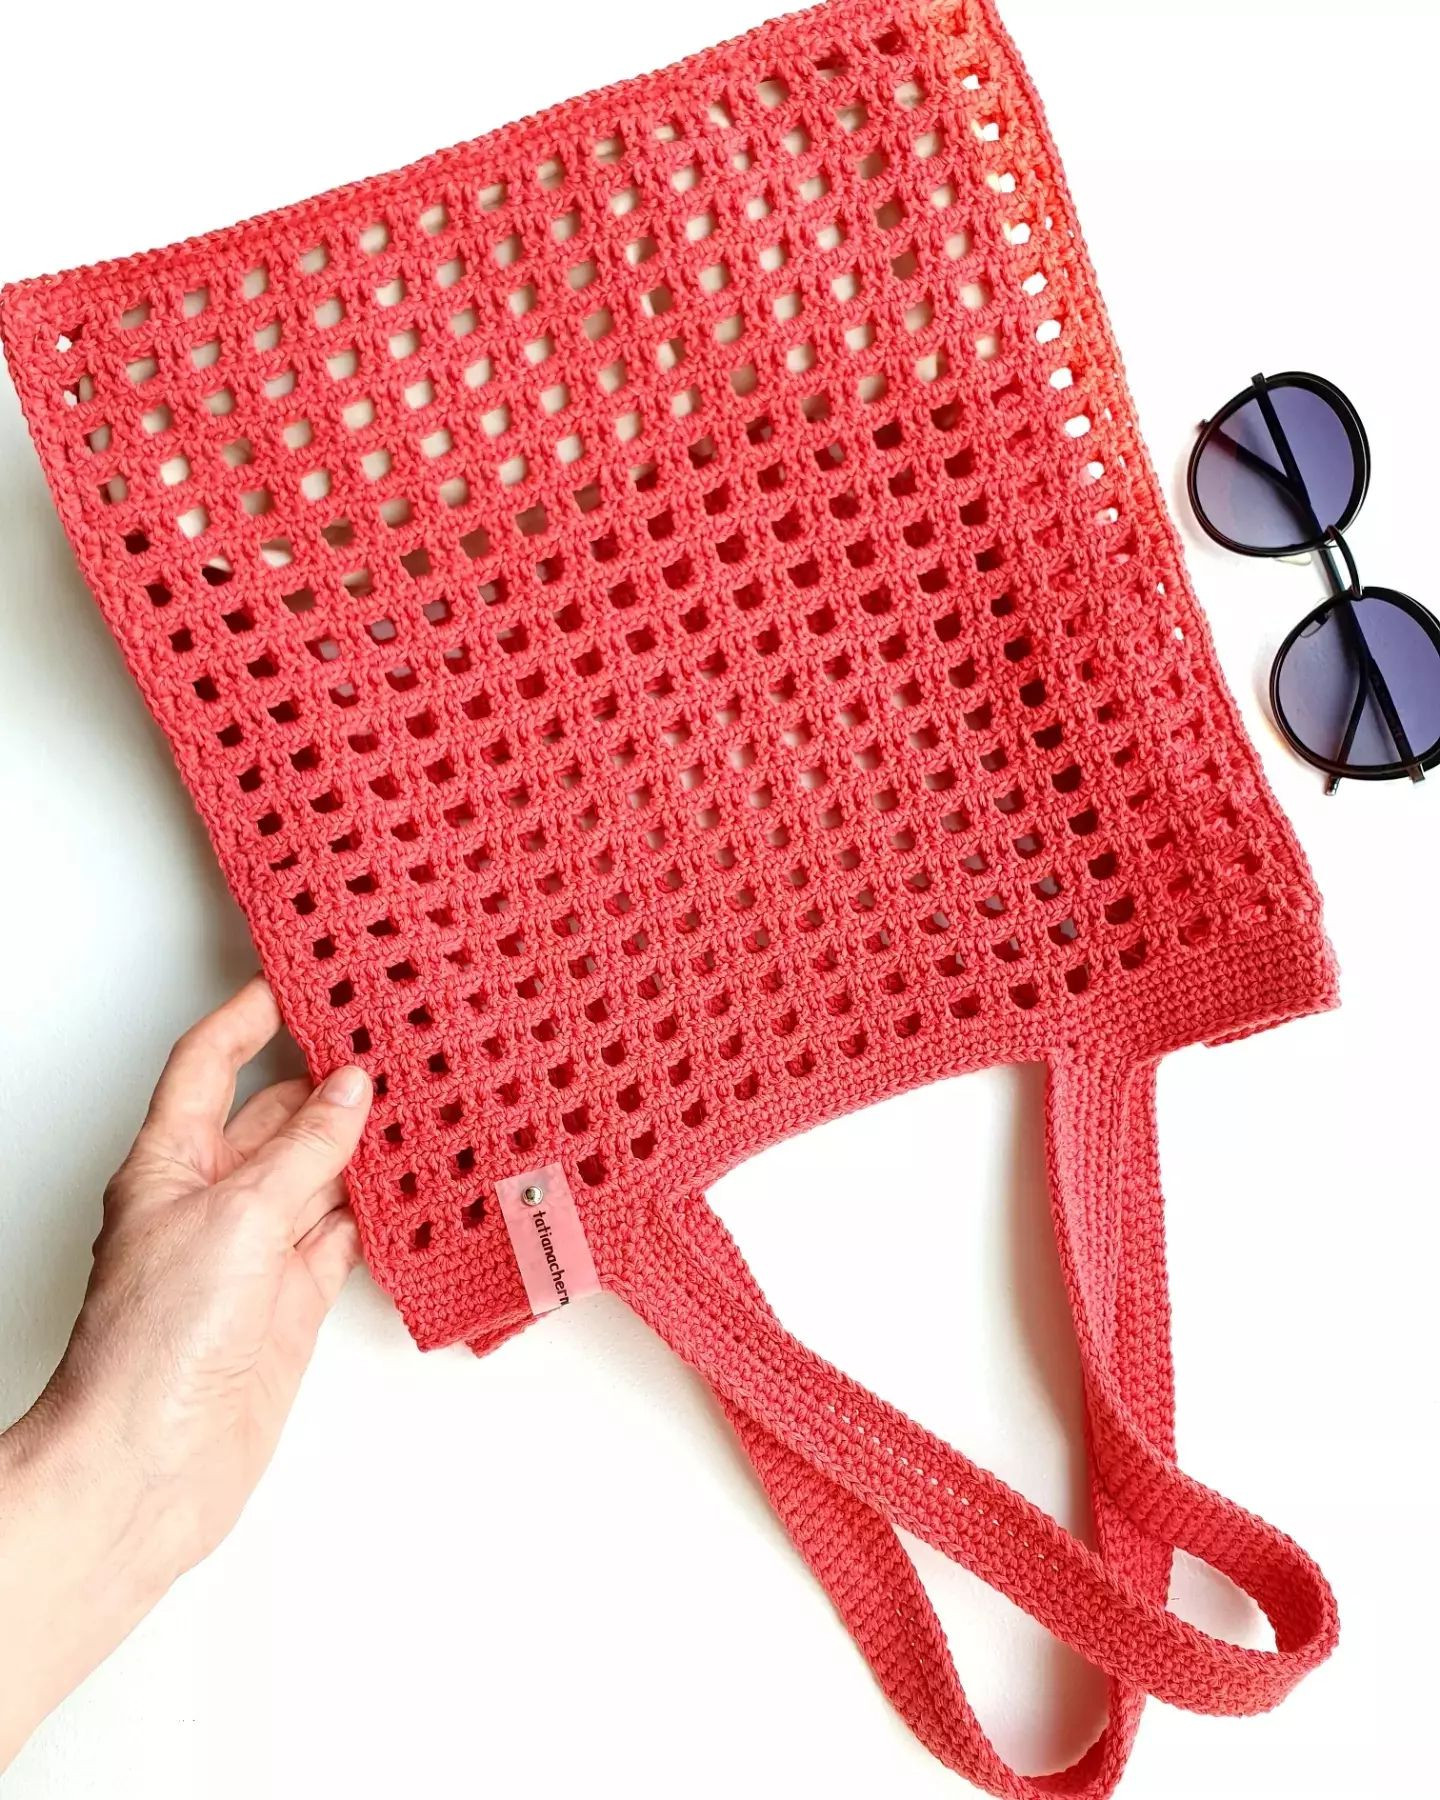 free crochet pattern pink handbag